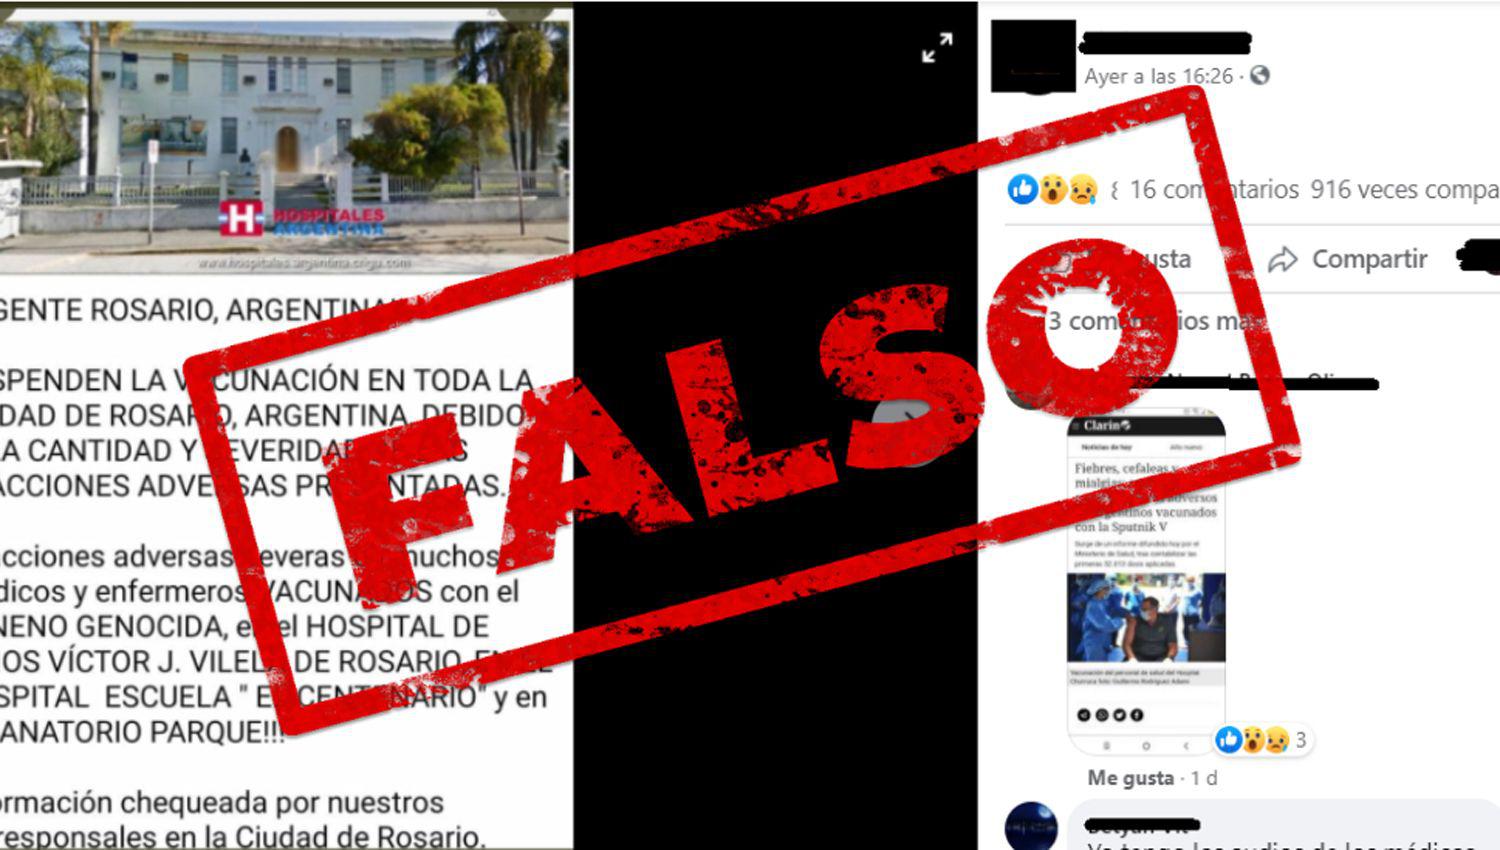 Es falso que suspendieron la vacunacioacuten en toda la ciudad de Rosario por efectos adversos de la vacuna Sputnik V